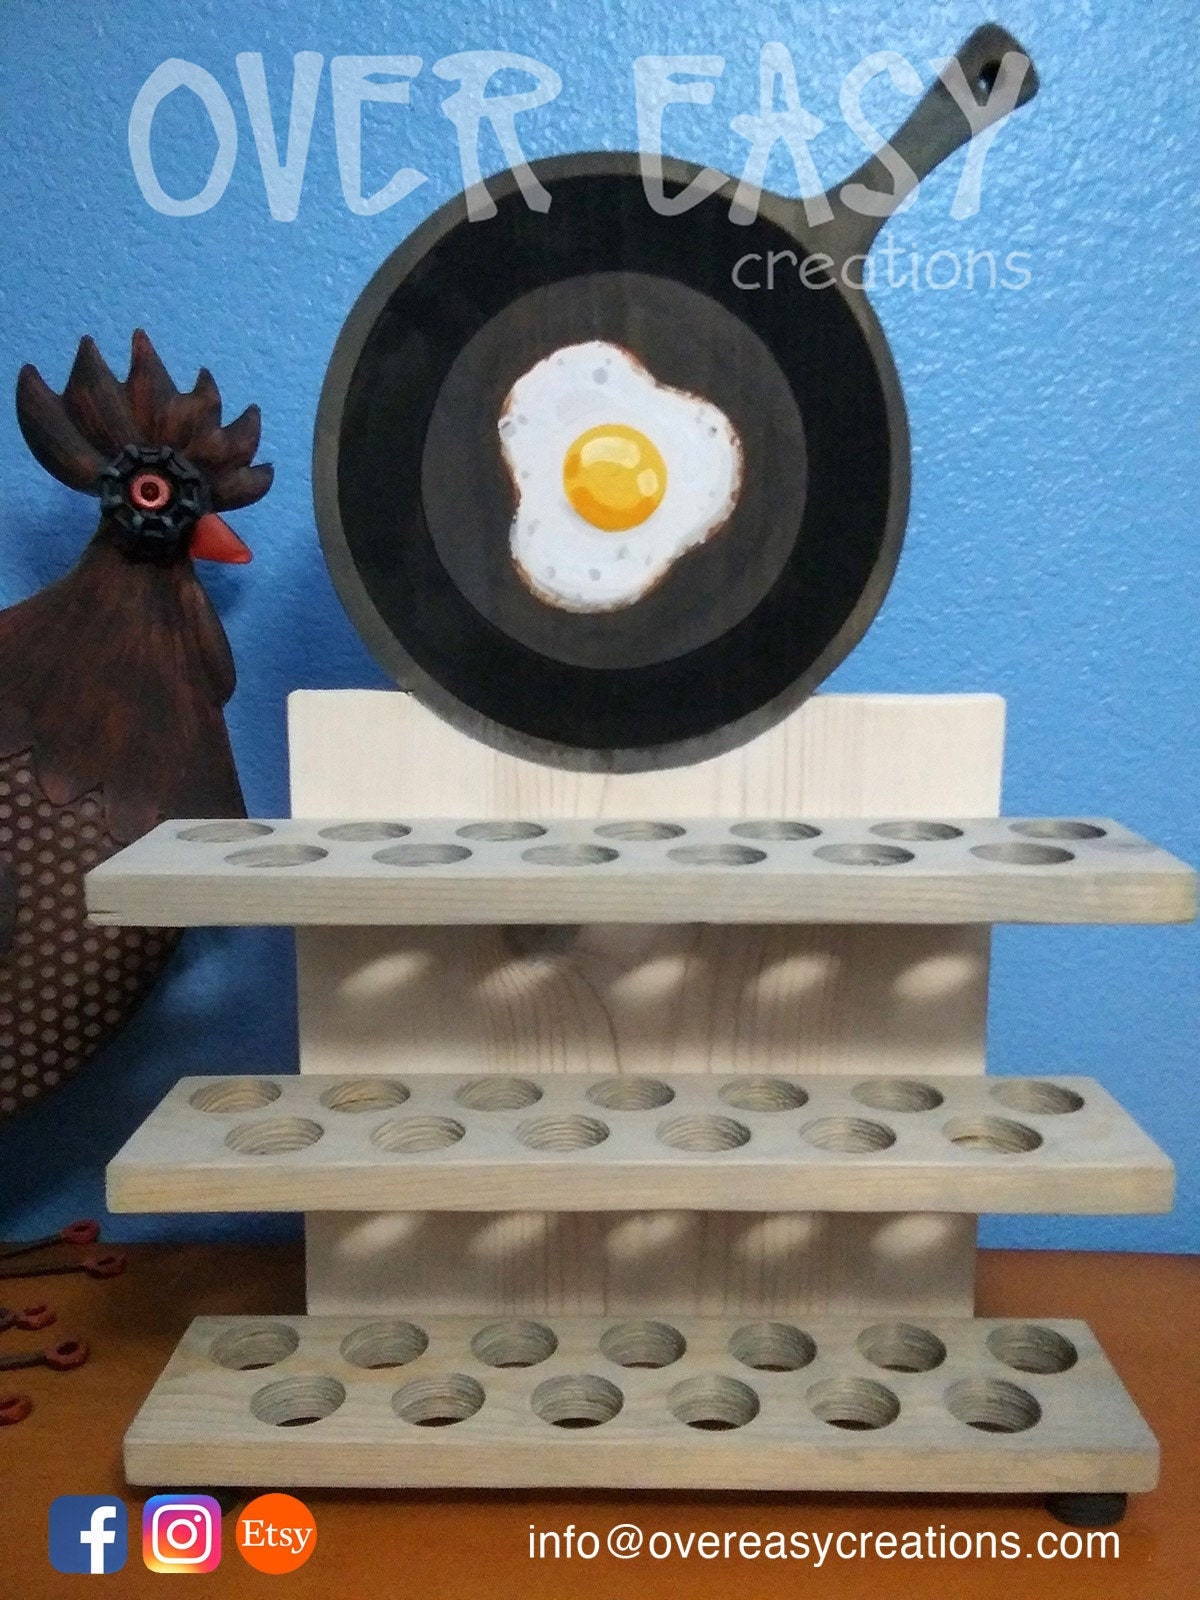 Egg Skelter Egg Roller for Fresh Chicken Eggs